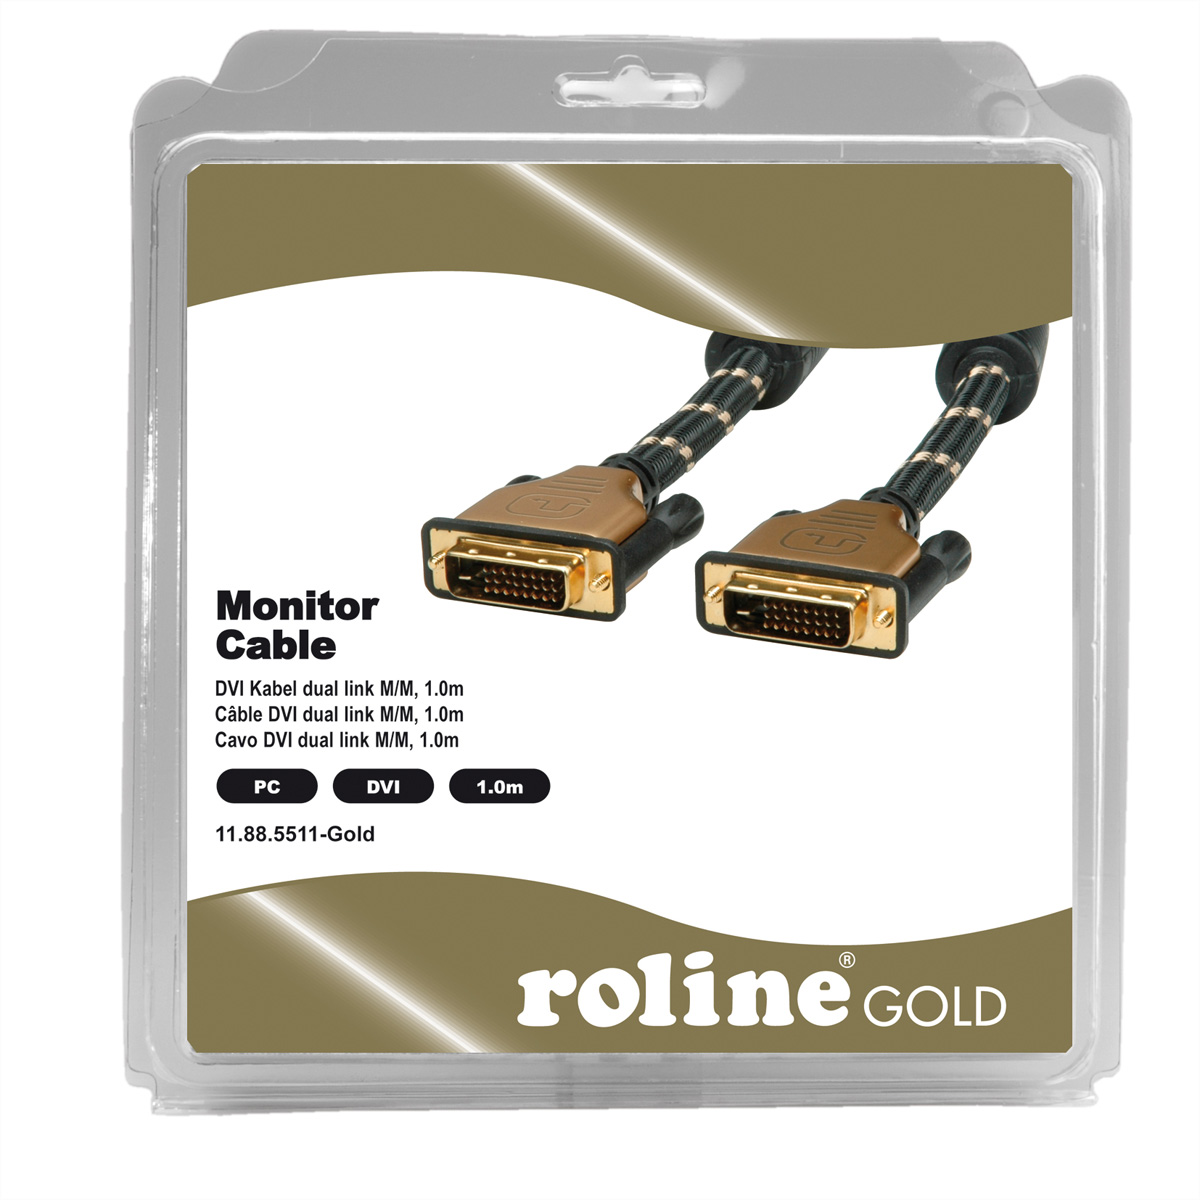 1 Monitorkabel (dual GOLD (24+1) DVI-Kabel dual link, link), ST-ST, m DVI, ROLINE